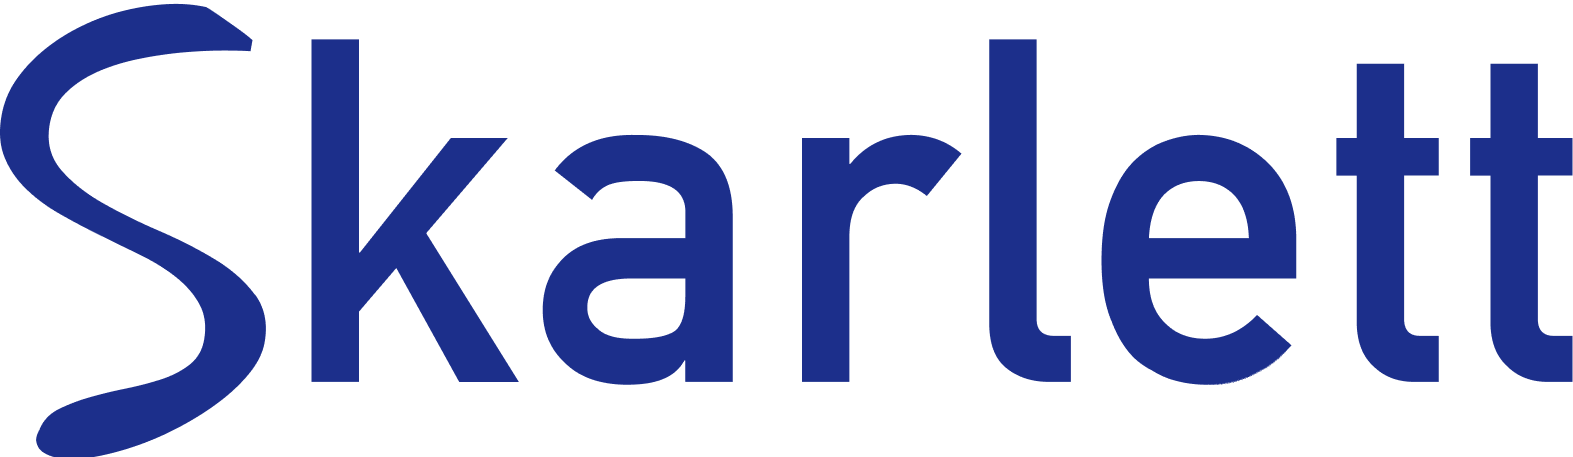 Logo Skarlett Bleu